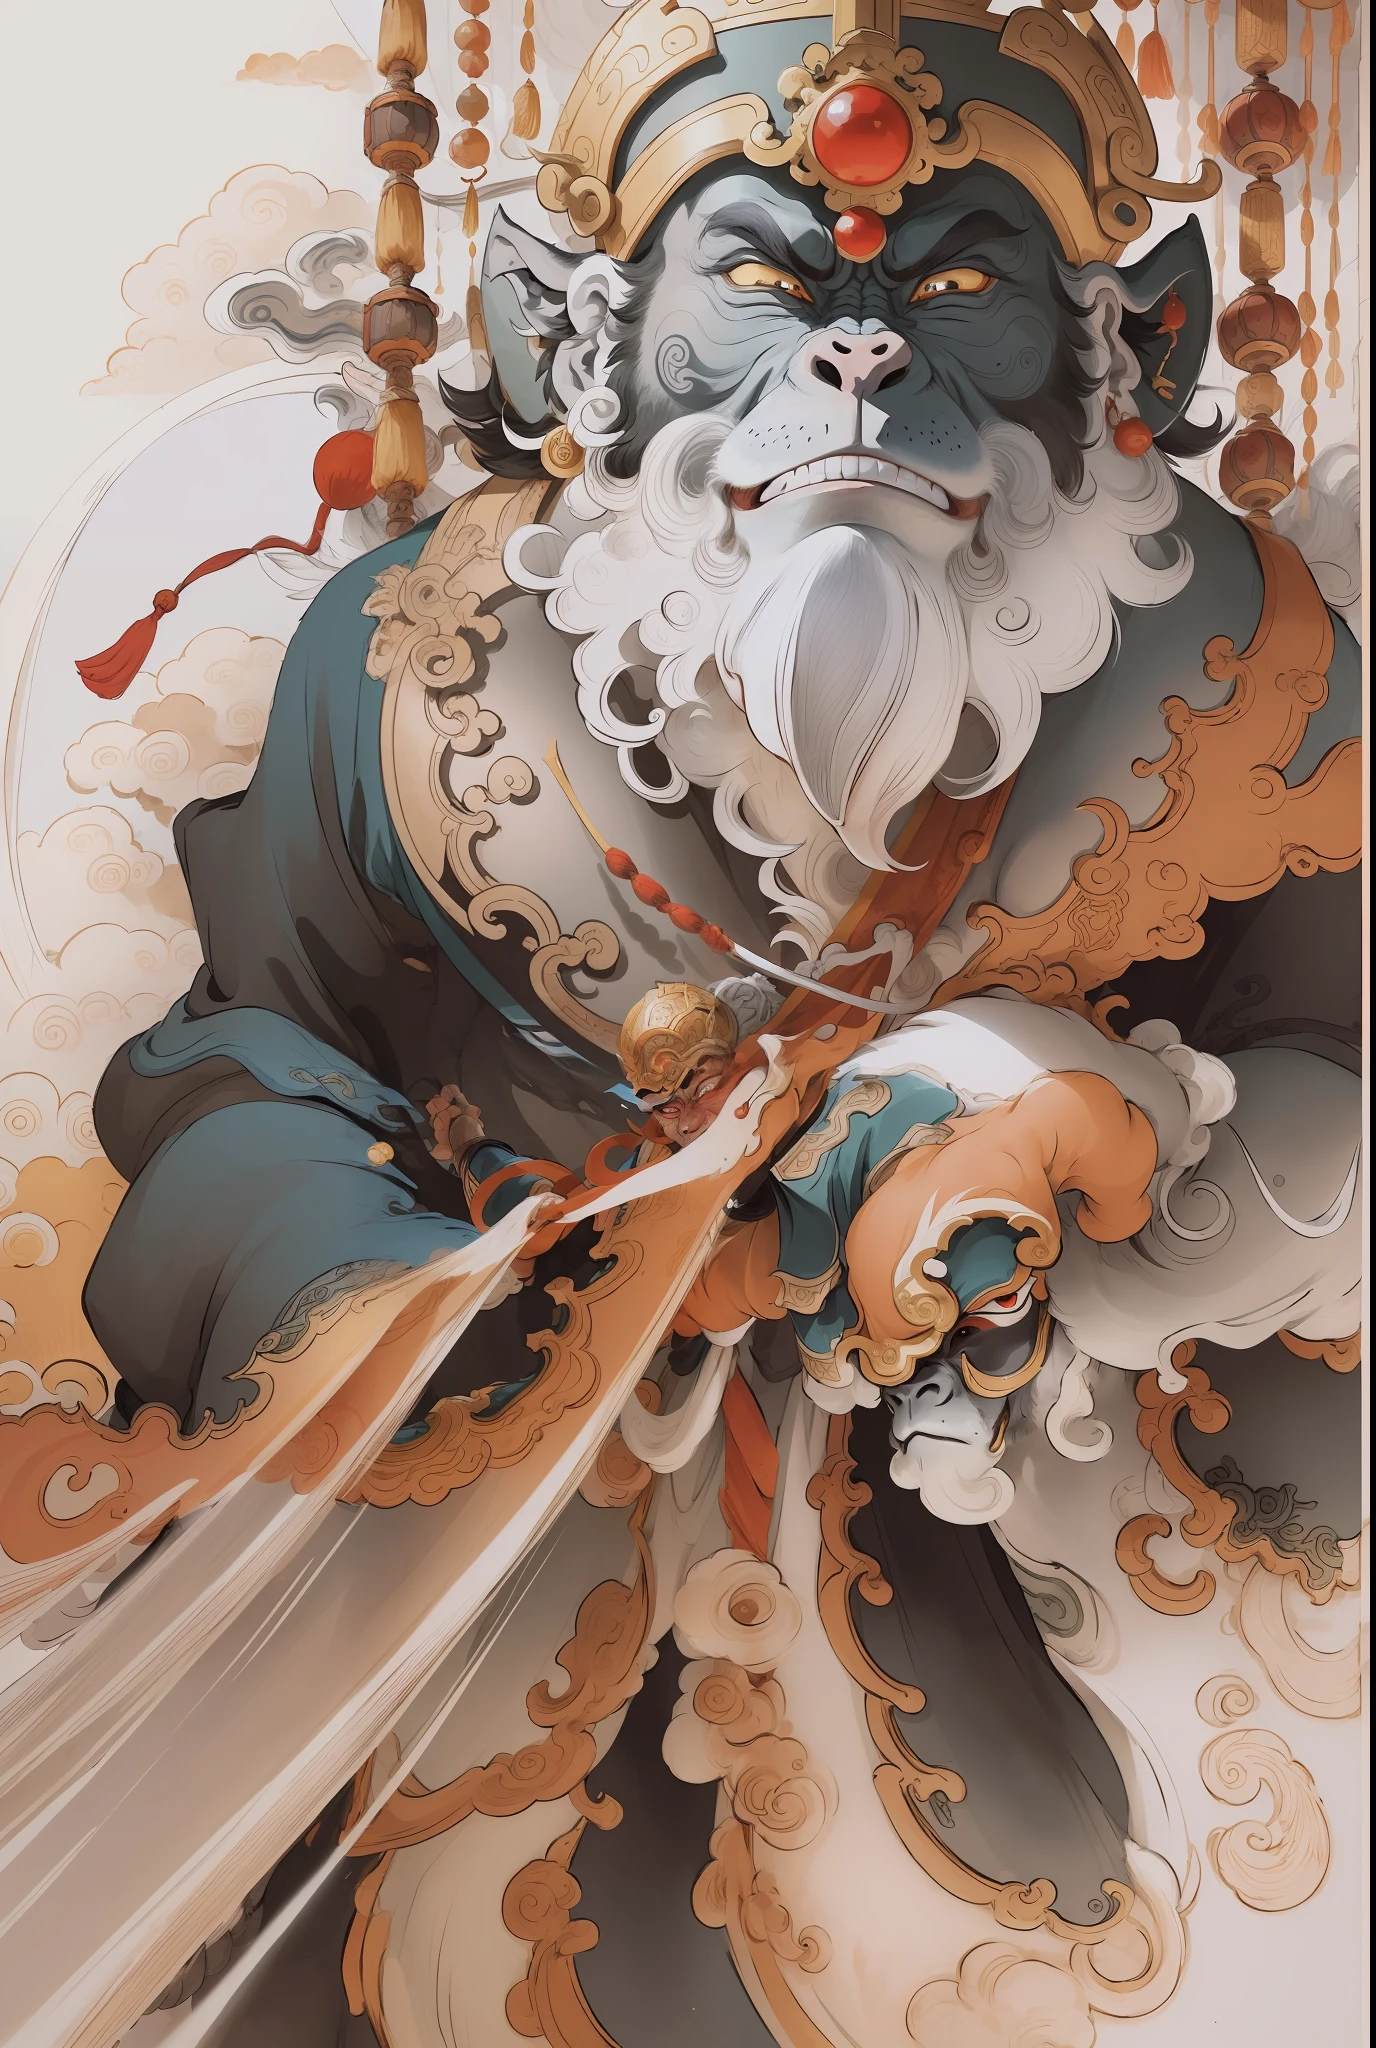 원숭이 왕, Qi Tian Daisheng Tiangong (서쪽으로의 여행에서), 수묵화풍, 깨끗한 색상, 결정적인 삭감, 여백, 자유형, 걸작, 매우 상세한, 서사적 구성, 고품질, 최상의 품질, 픽사 스타일, 과포화, 초현실적, artgerm --v 6